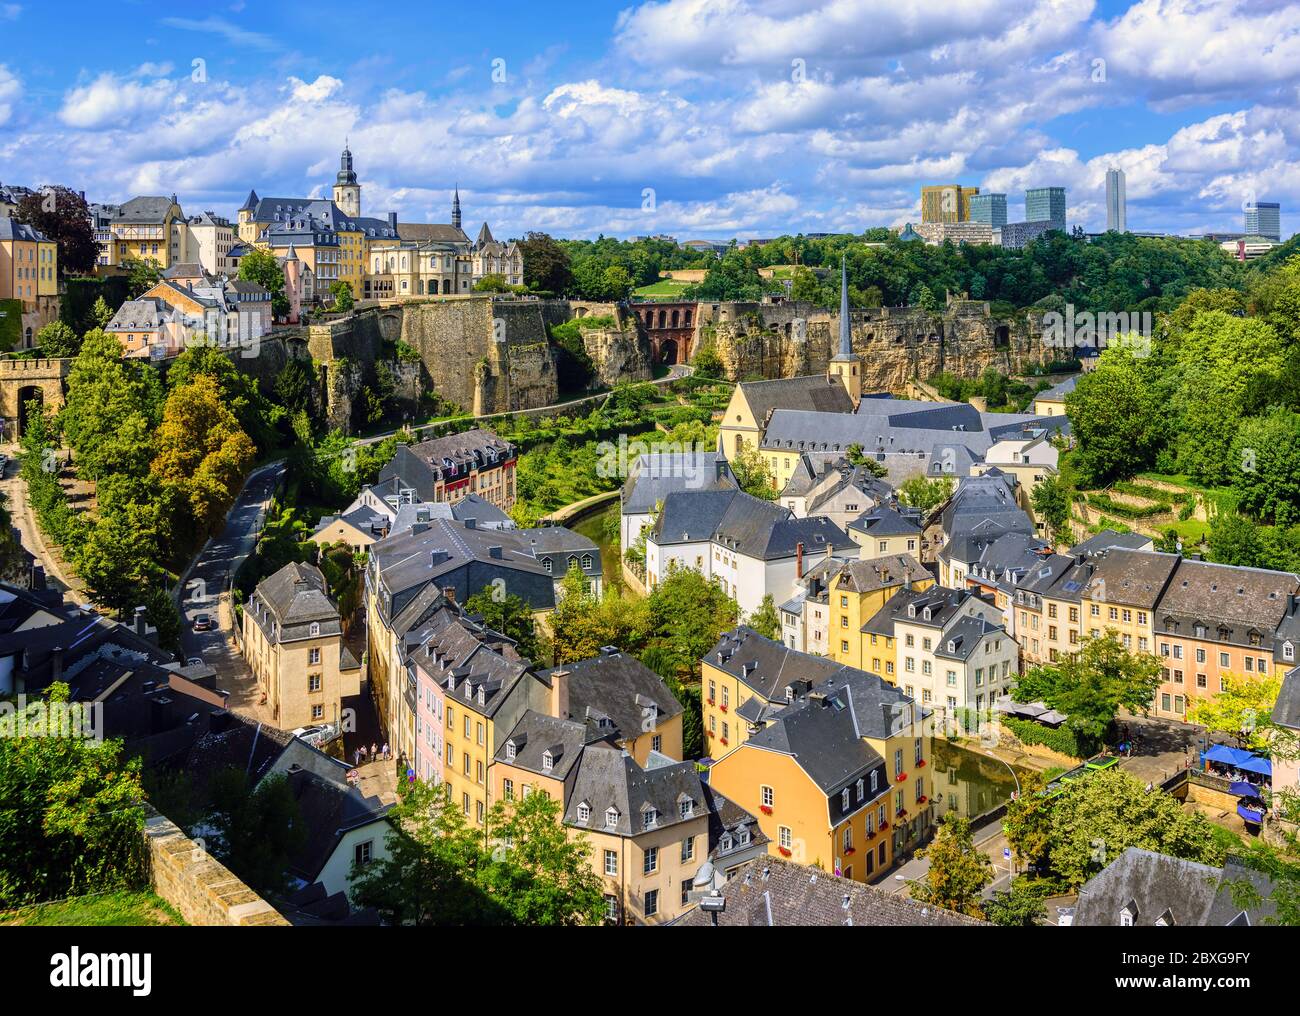 Lussemburgo, capitale del Granducato del Lussemburgo, vista della città vecchia e del quartiere di Grund in una giornata estiva soleggiata Foto Stock